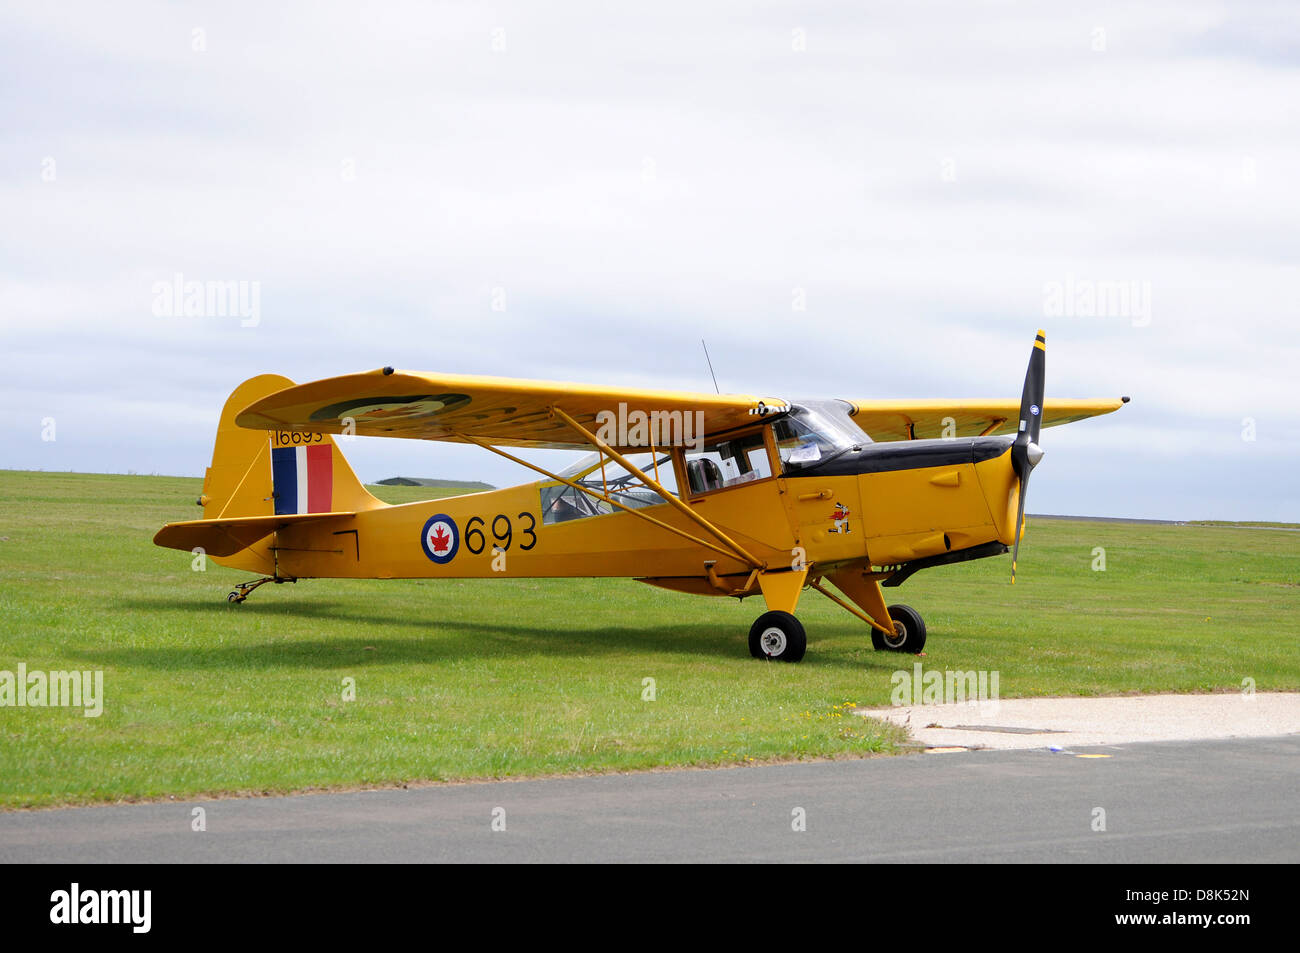 Des avions d'époque à la journée de l'air à Culdrose, Helston, Cornwall, UK Banque D'Images